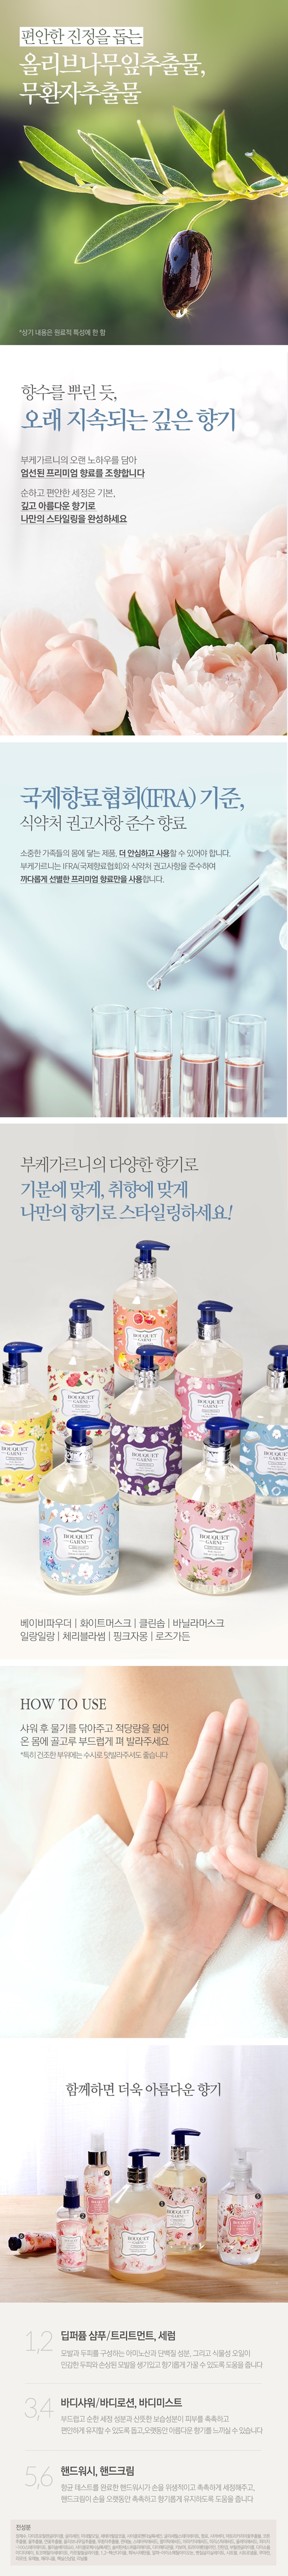 bouquet-garni-body-lotion-clean-soap-info2.jpg